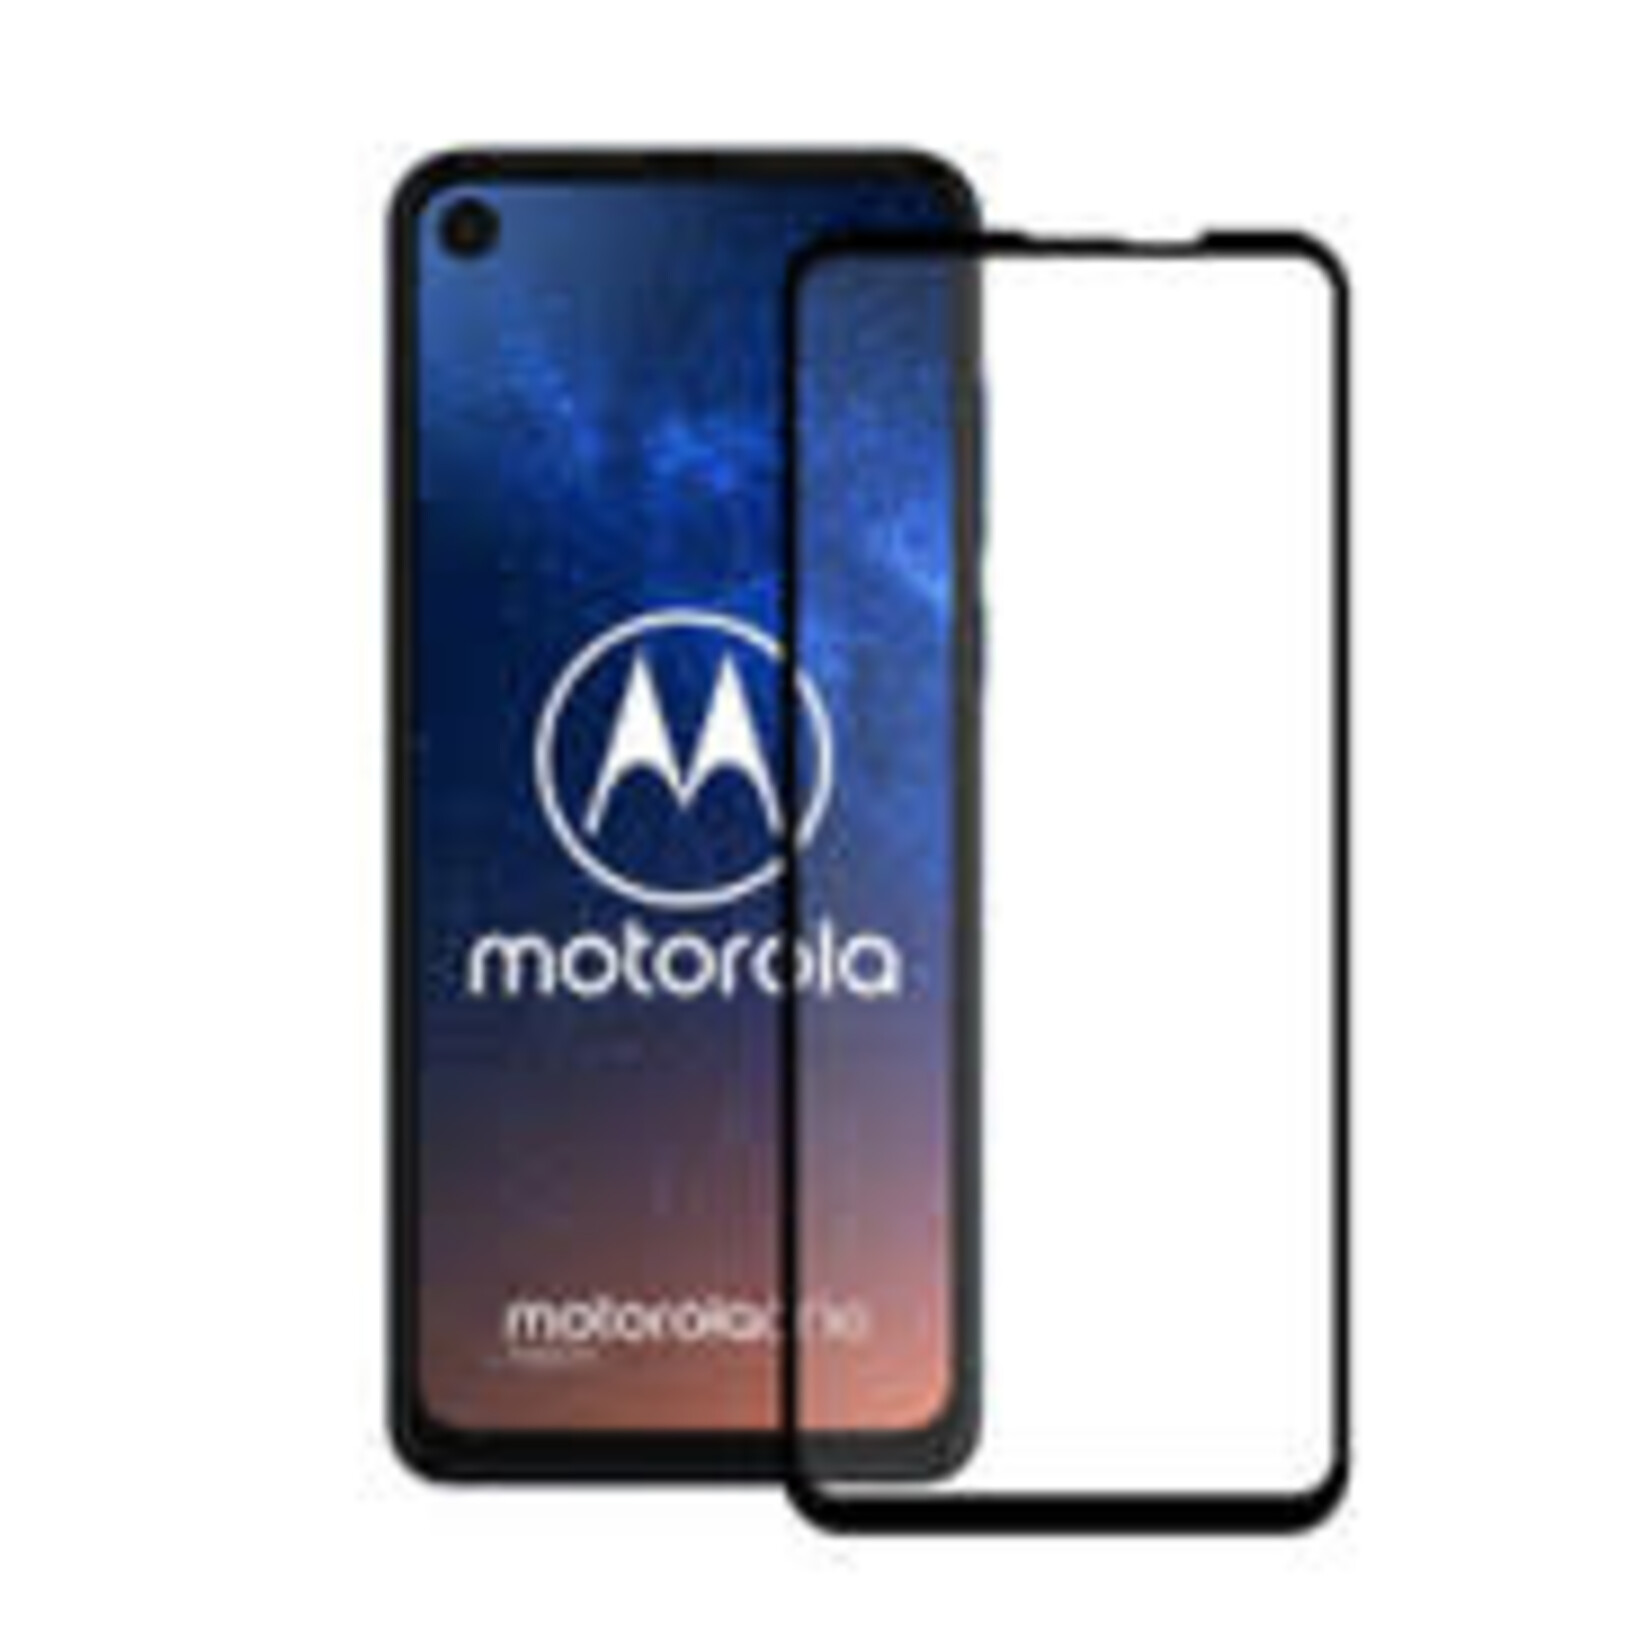 Motorola PROTECTEUR D'ÉCRAN MOTOROLA SÉRIE X ET AUTRE